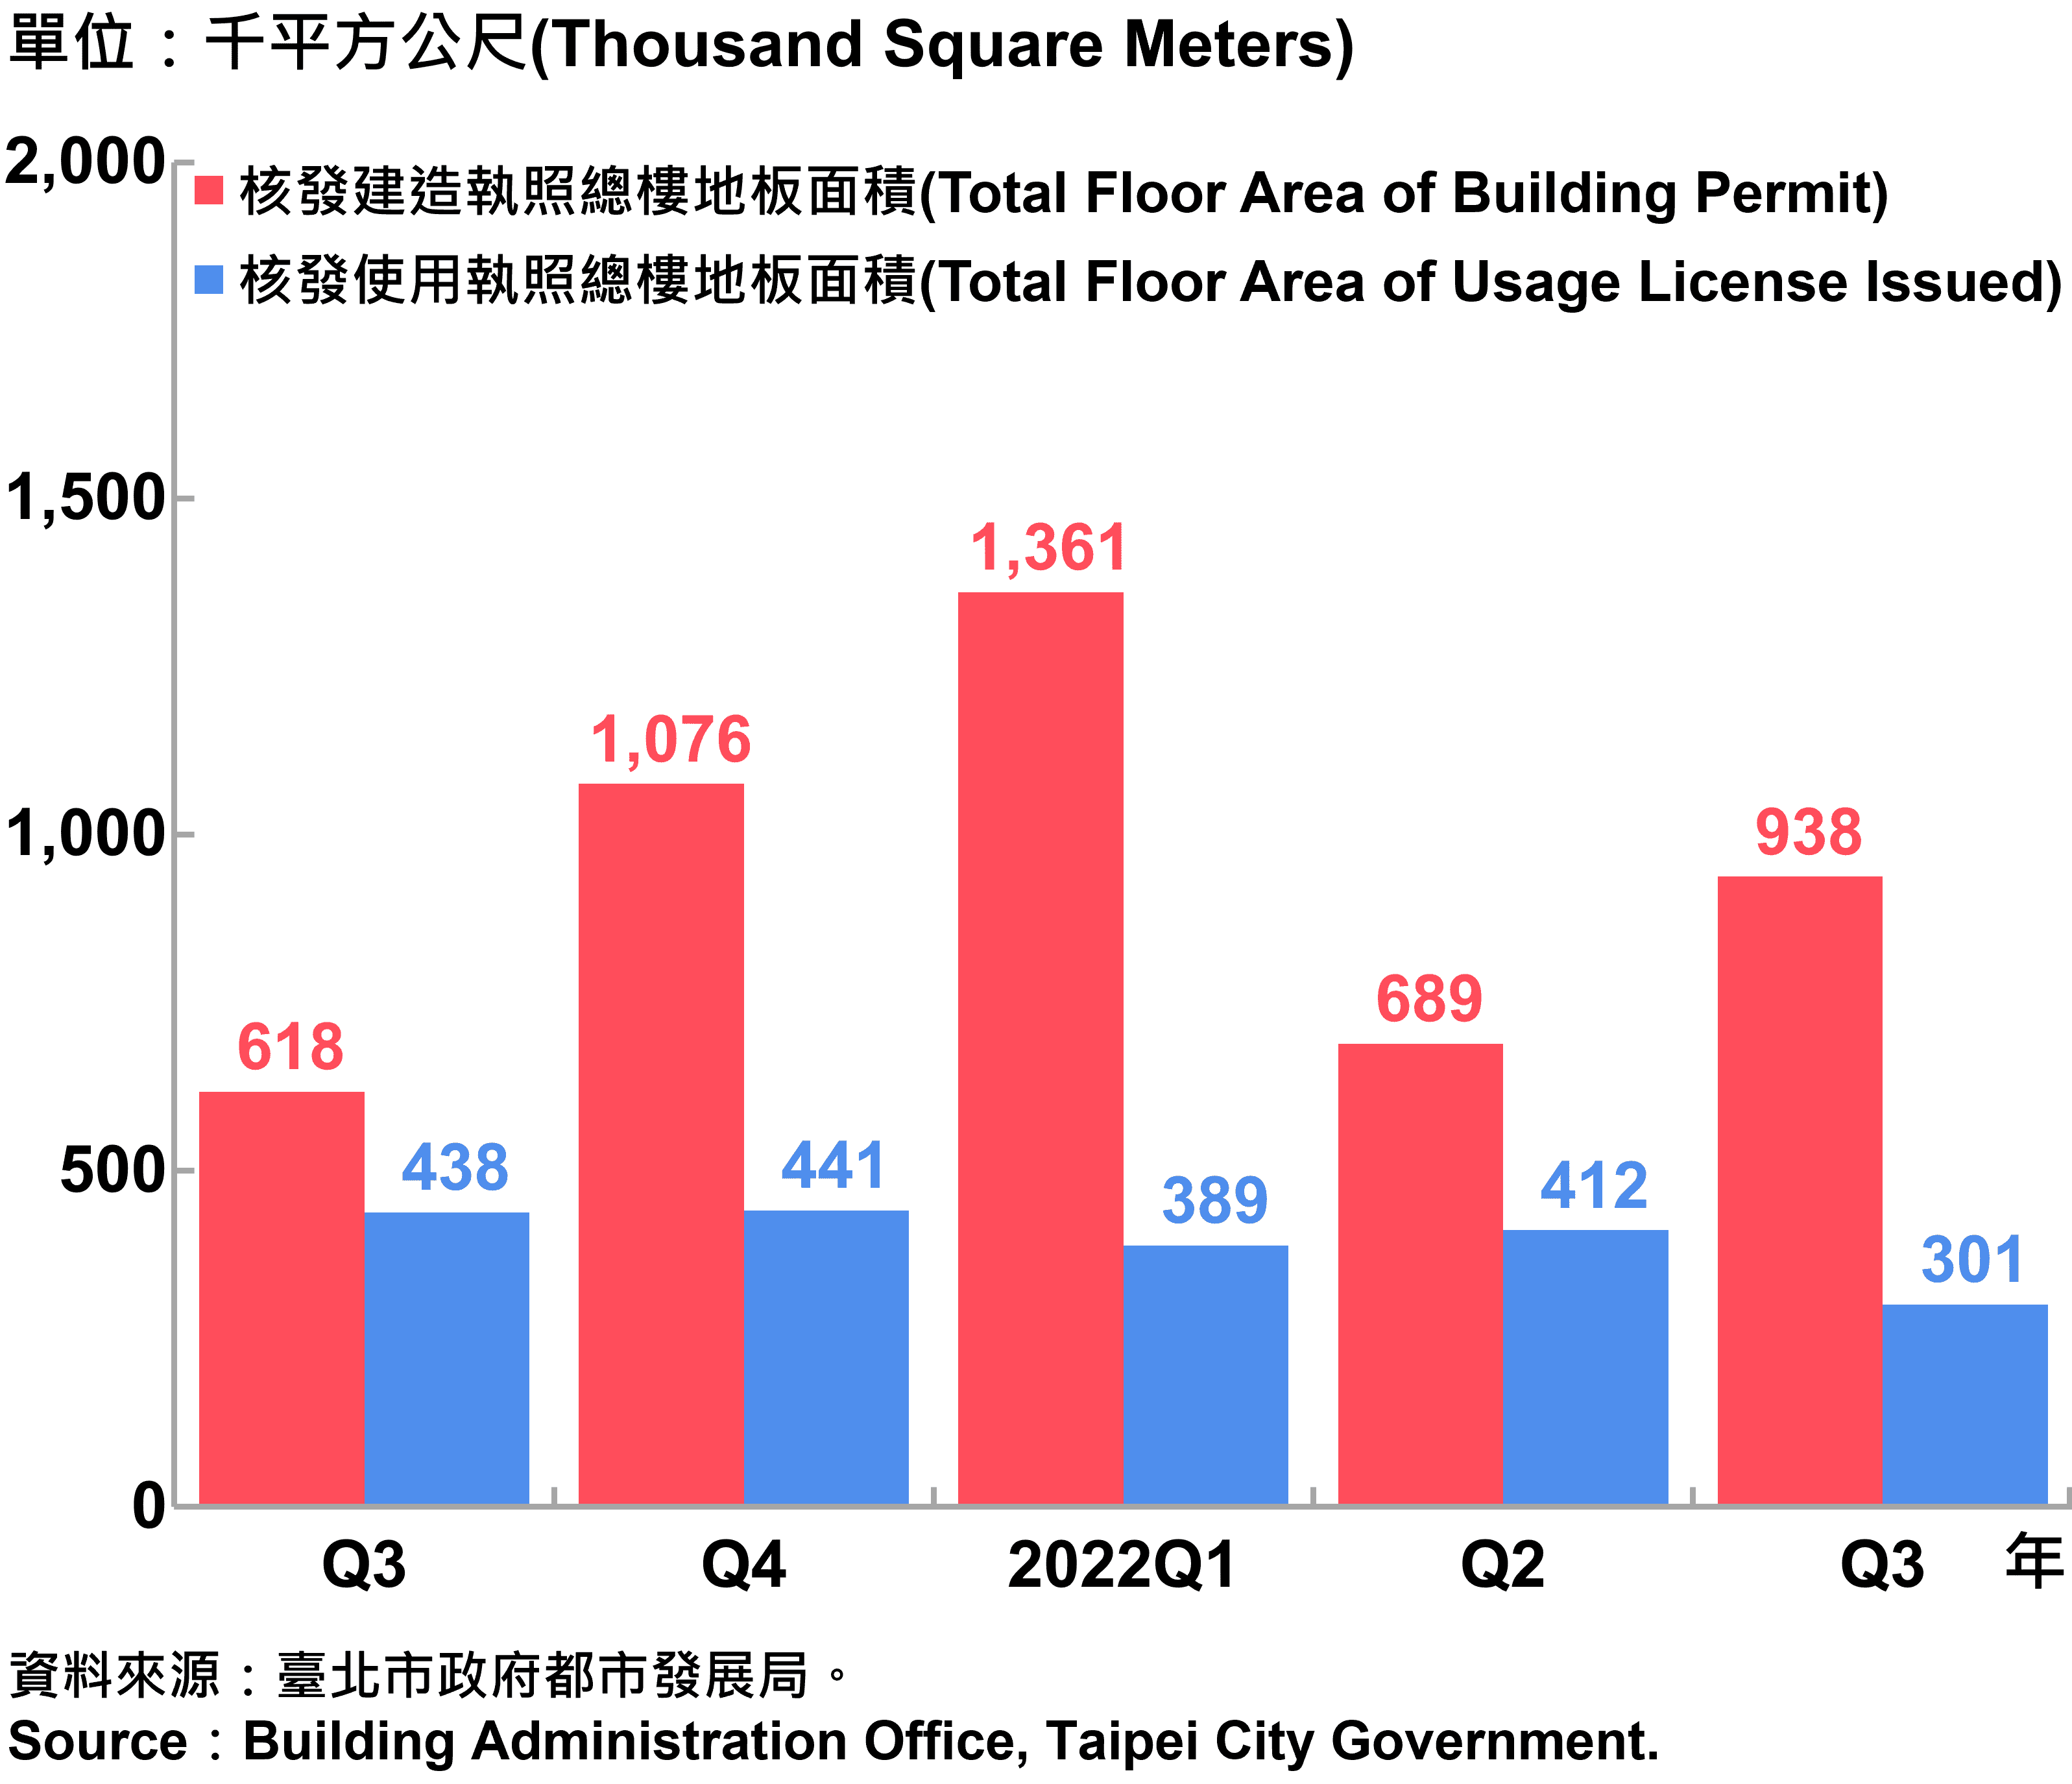 臺北市核發建築物執照與使用執照總樓地板面積—2022Q3 Total Floor Area of Building Permit and Usage License Issued in Taipei City—2022Q3